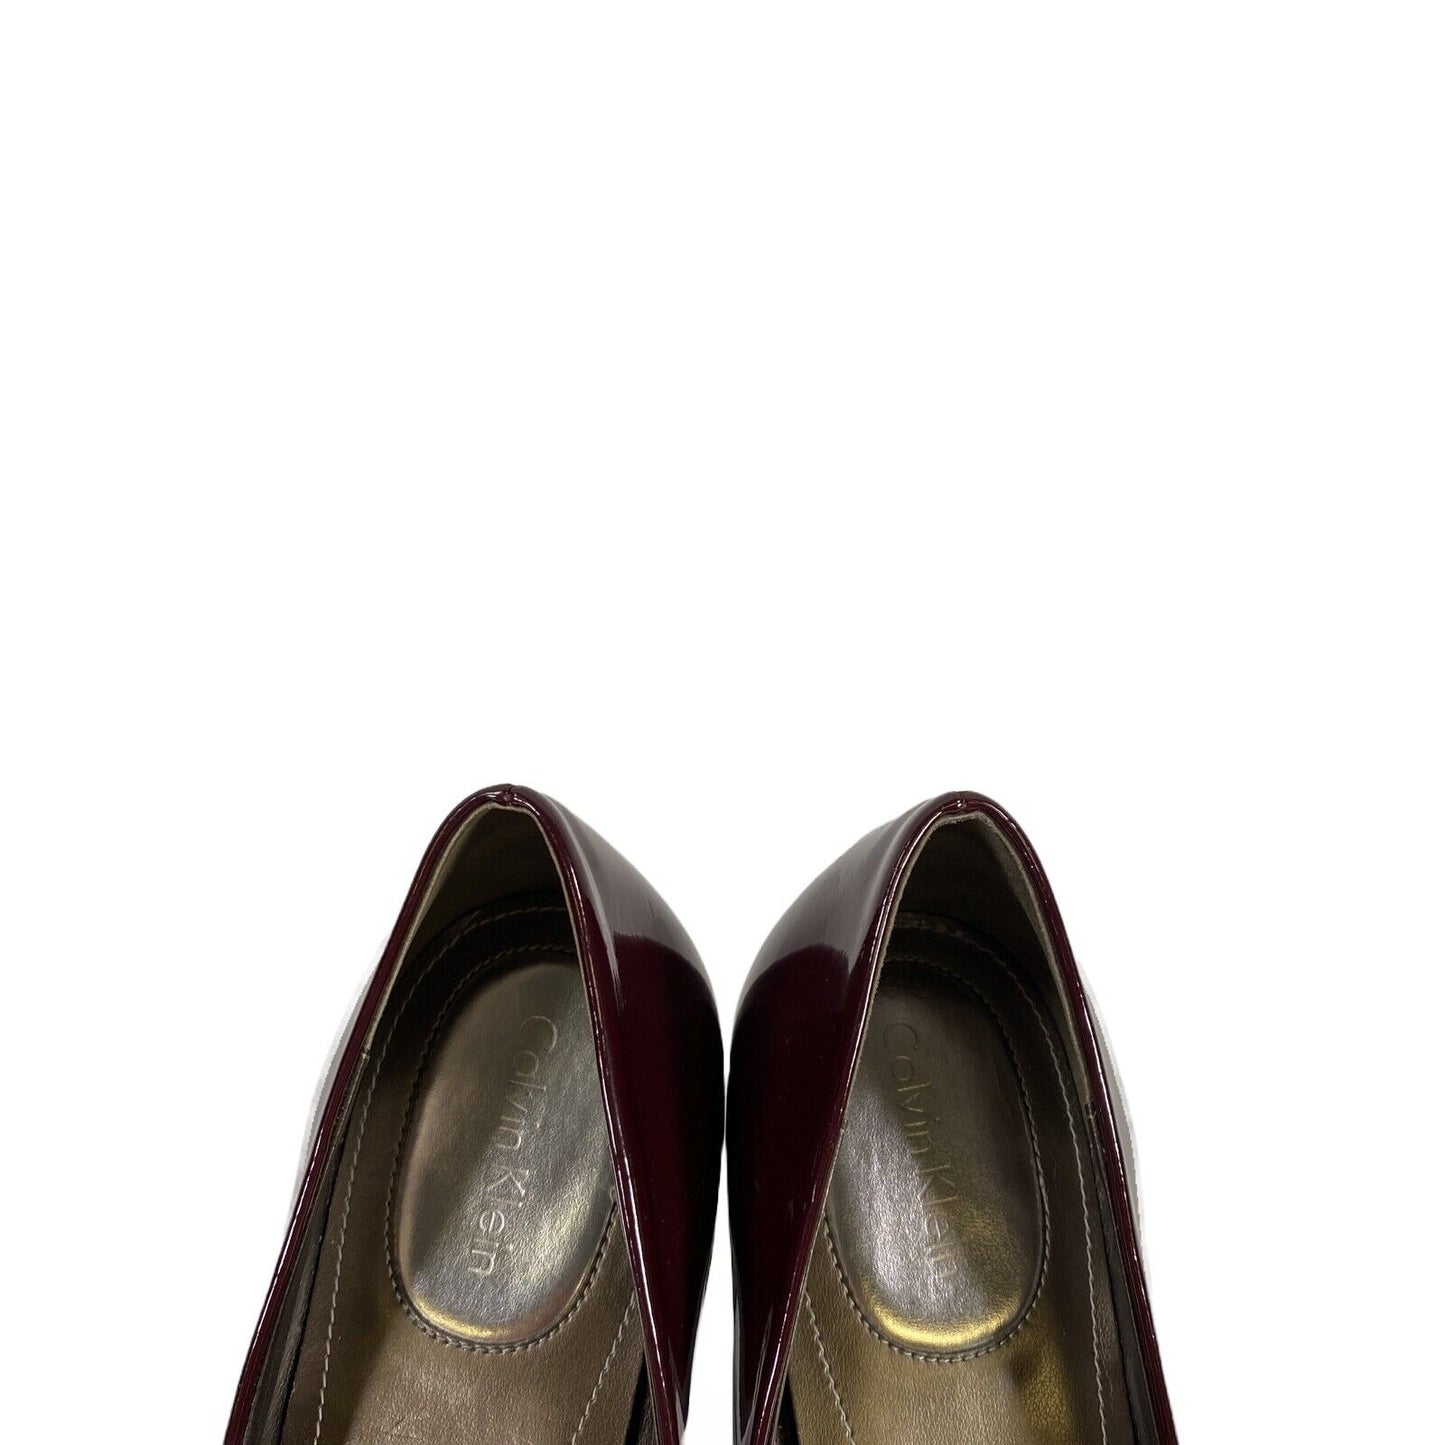 Calvin Klein Women's Burgundy/Purple Pump Heels - 8.5